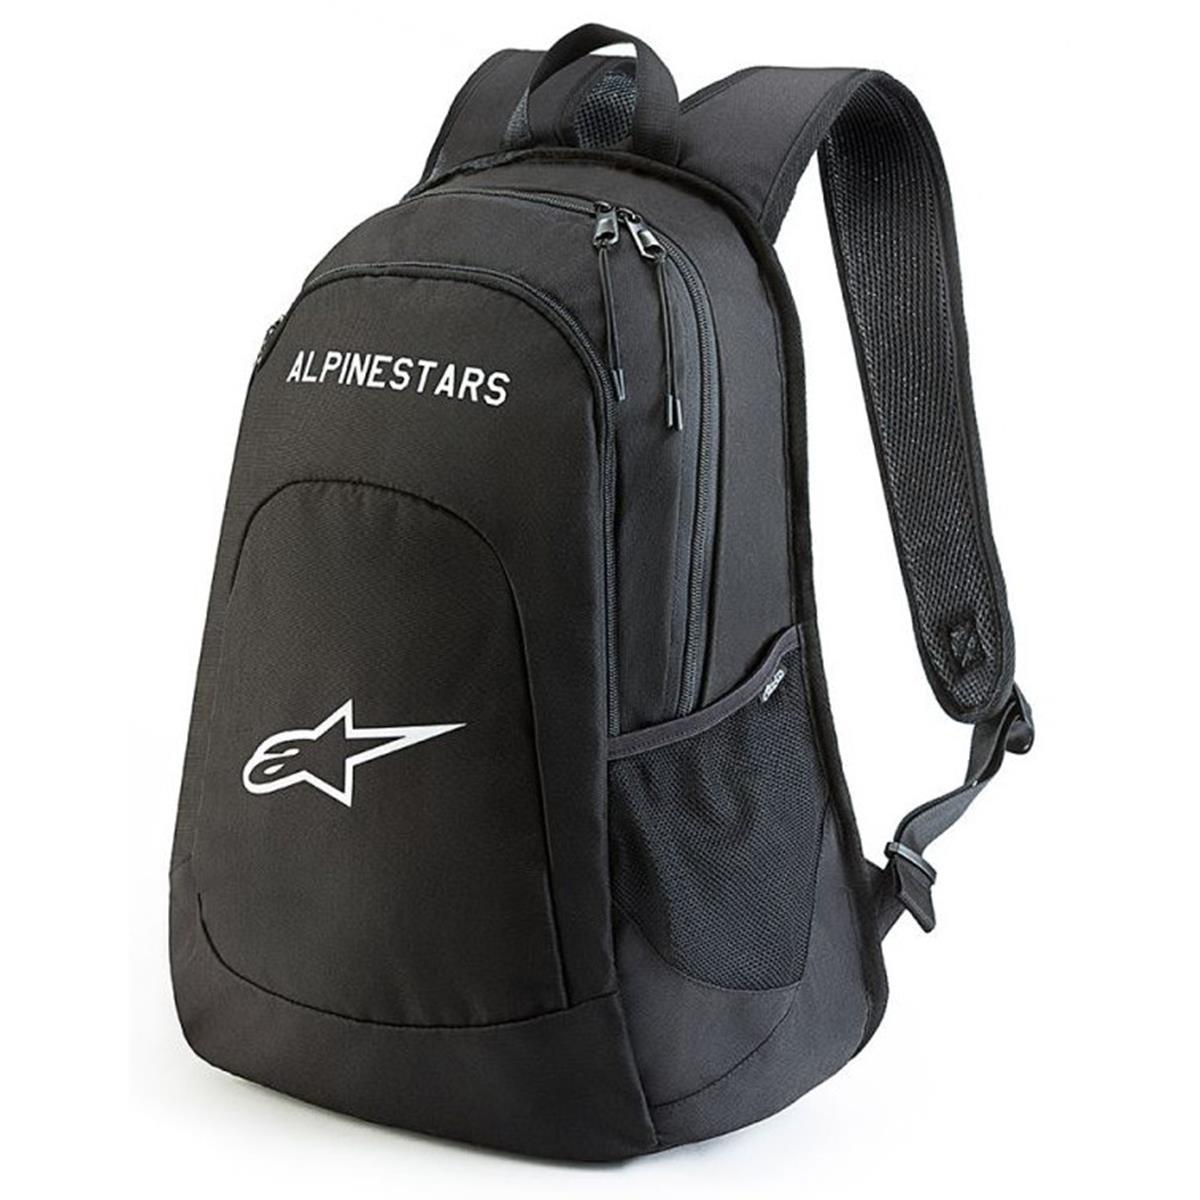 Alpinestars Backpack Decfon Black/White